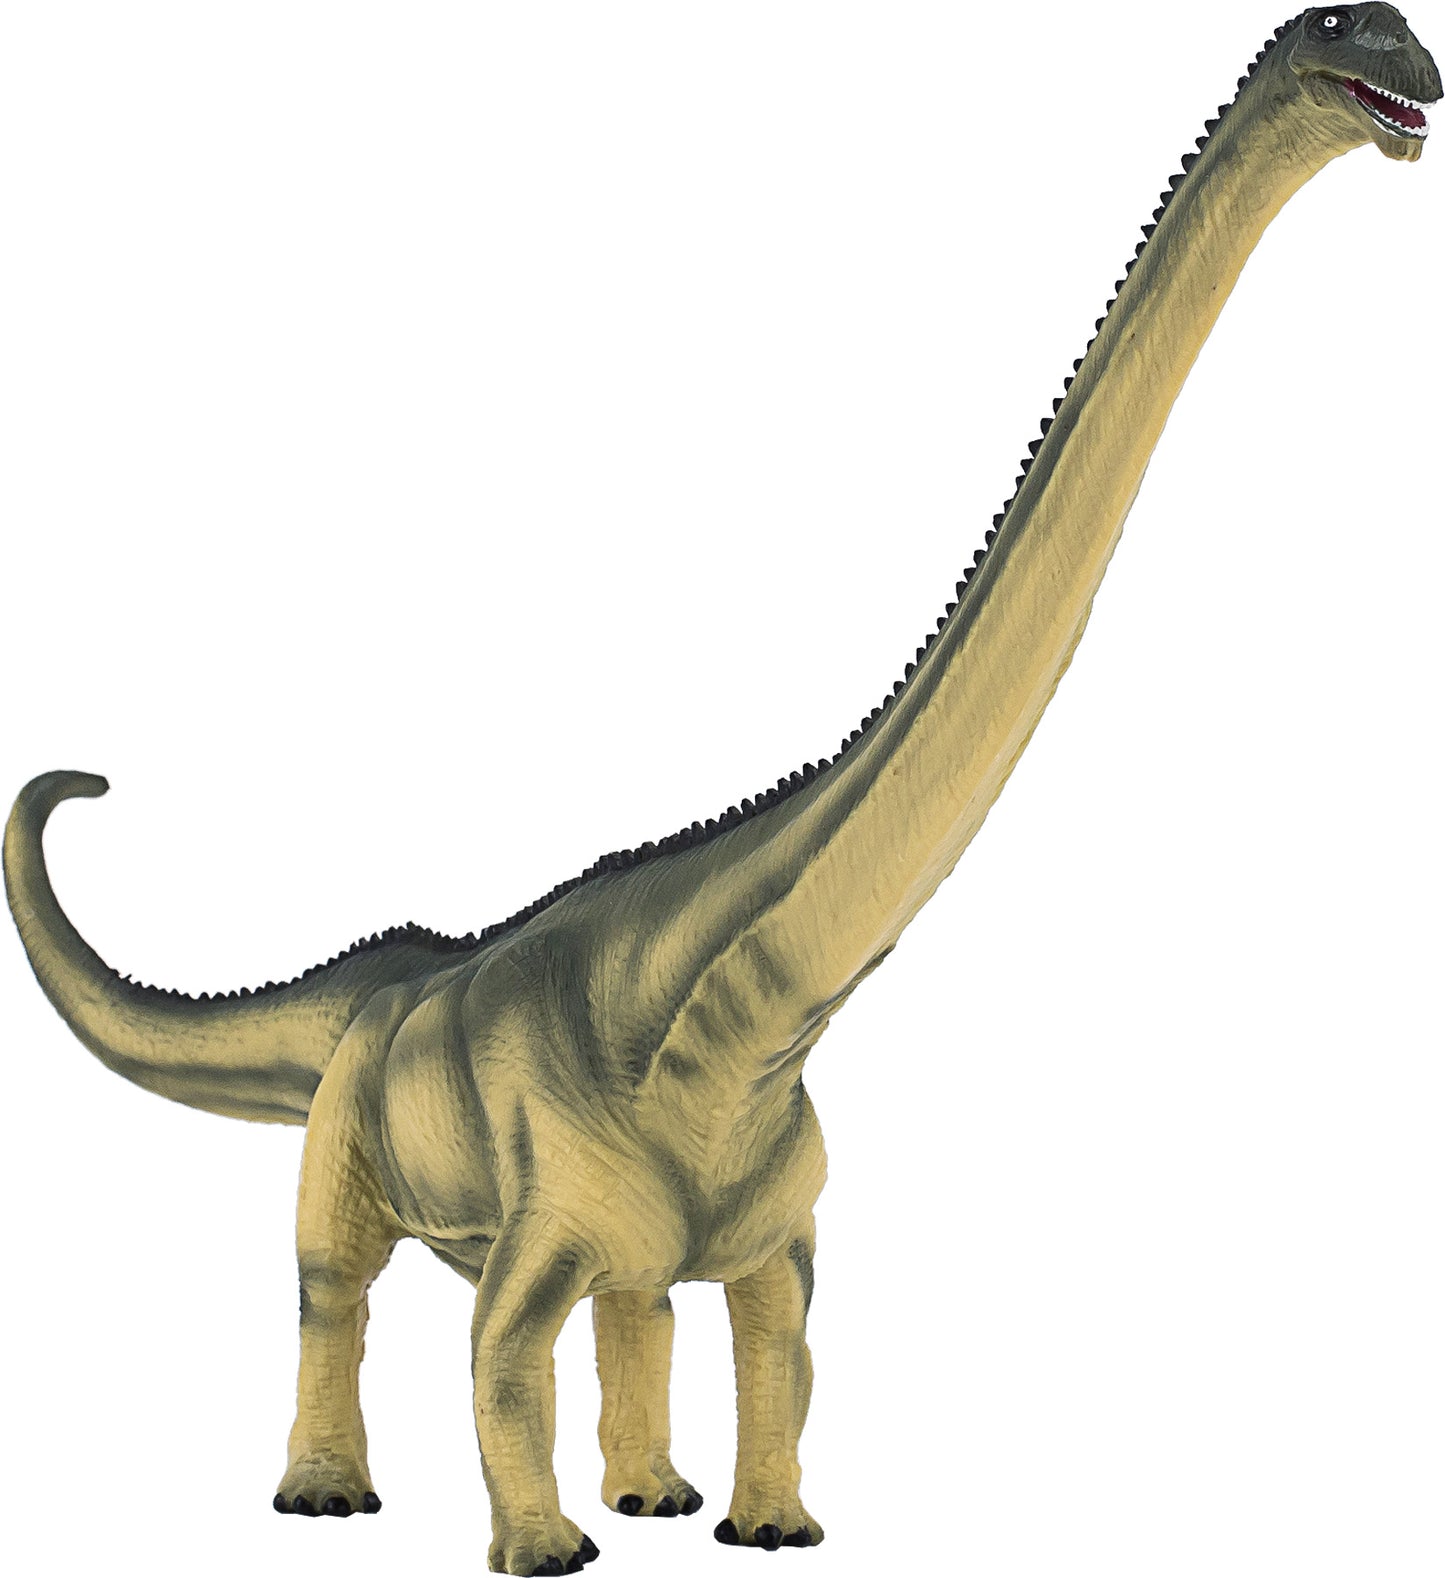 Mamenchisaurus New 2020